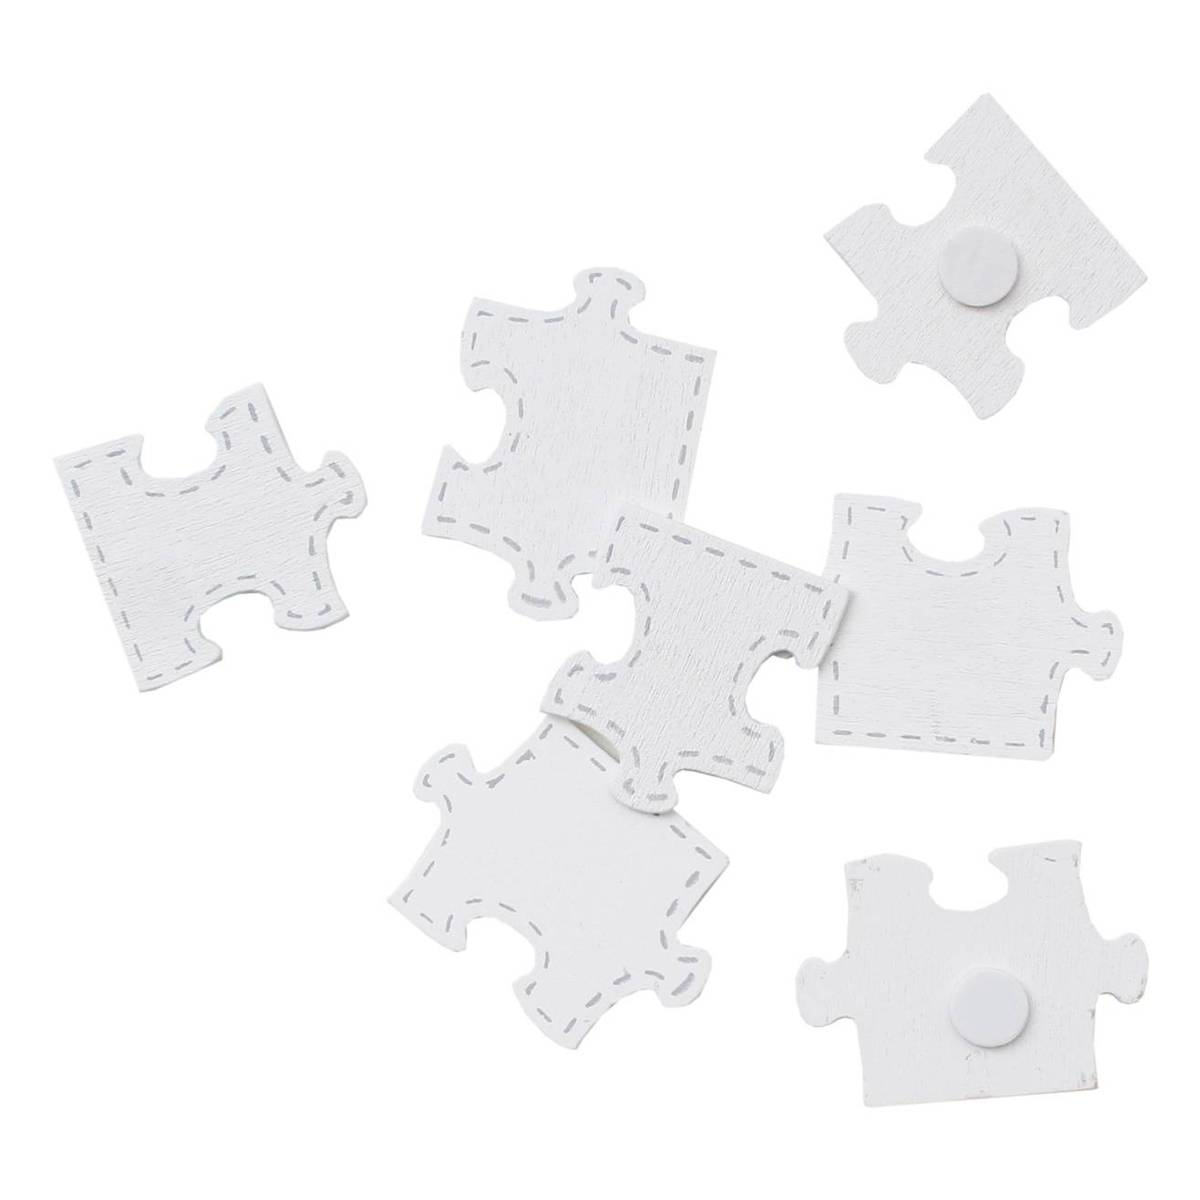 Jigsaw Puzzle, size 15x21 cm, white, 16 pc/ 1 pack, 24 puzzle pieces